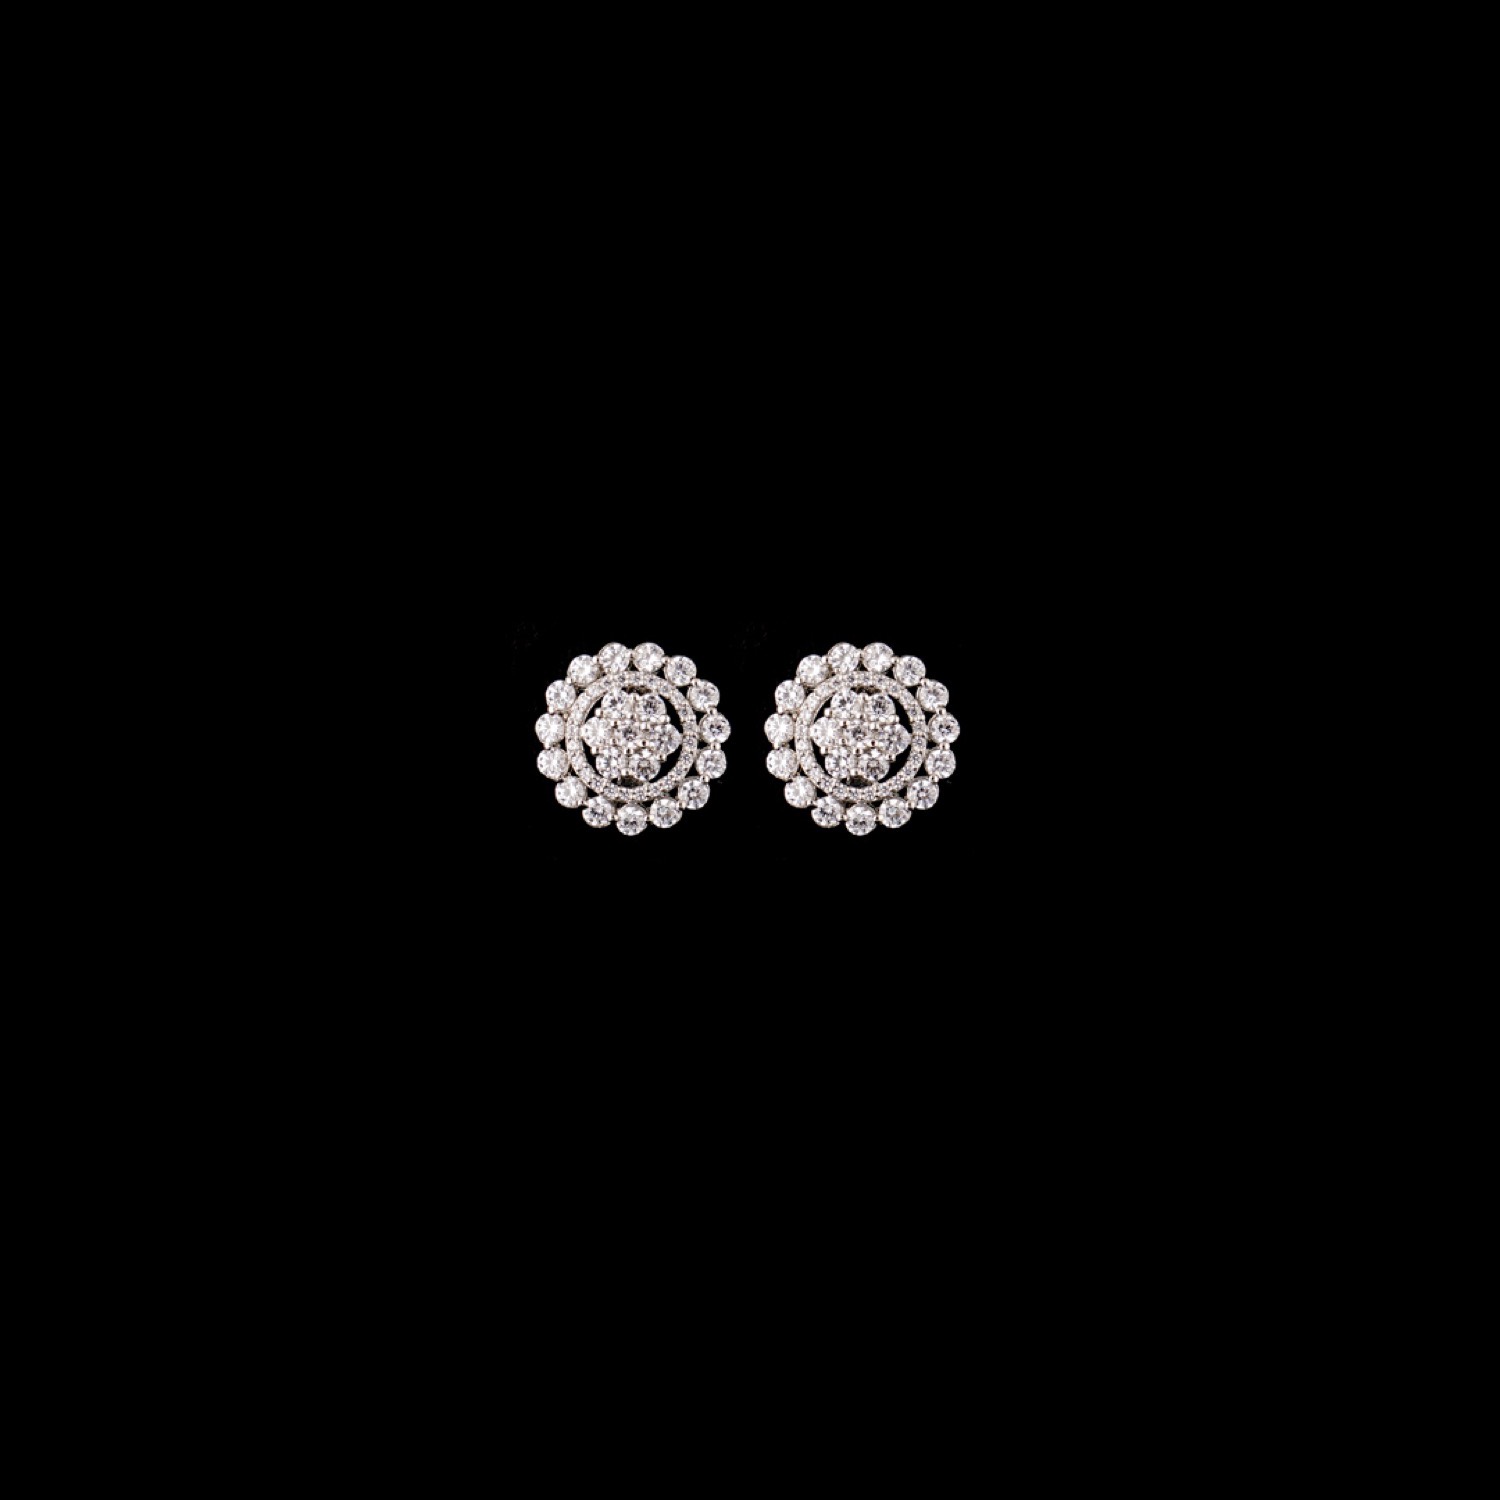 varam_earrings_102022_white_stone_round_shaped_studded_silver_earrings-1